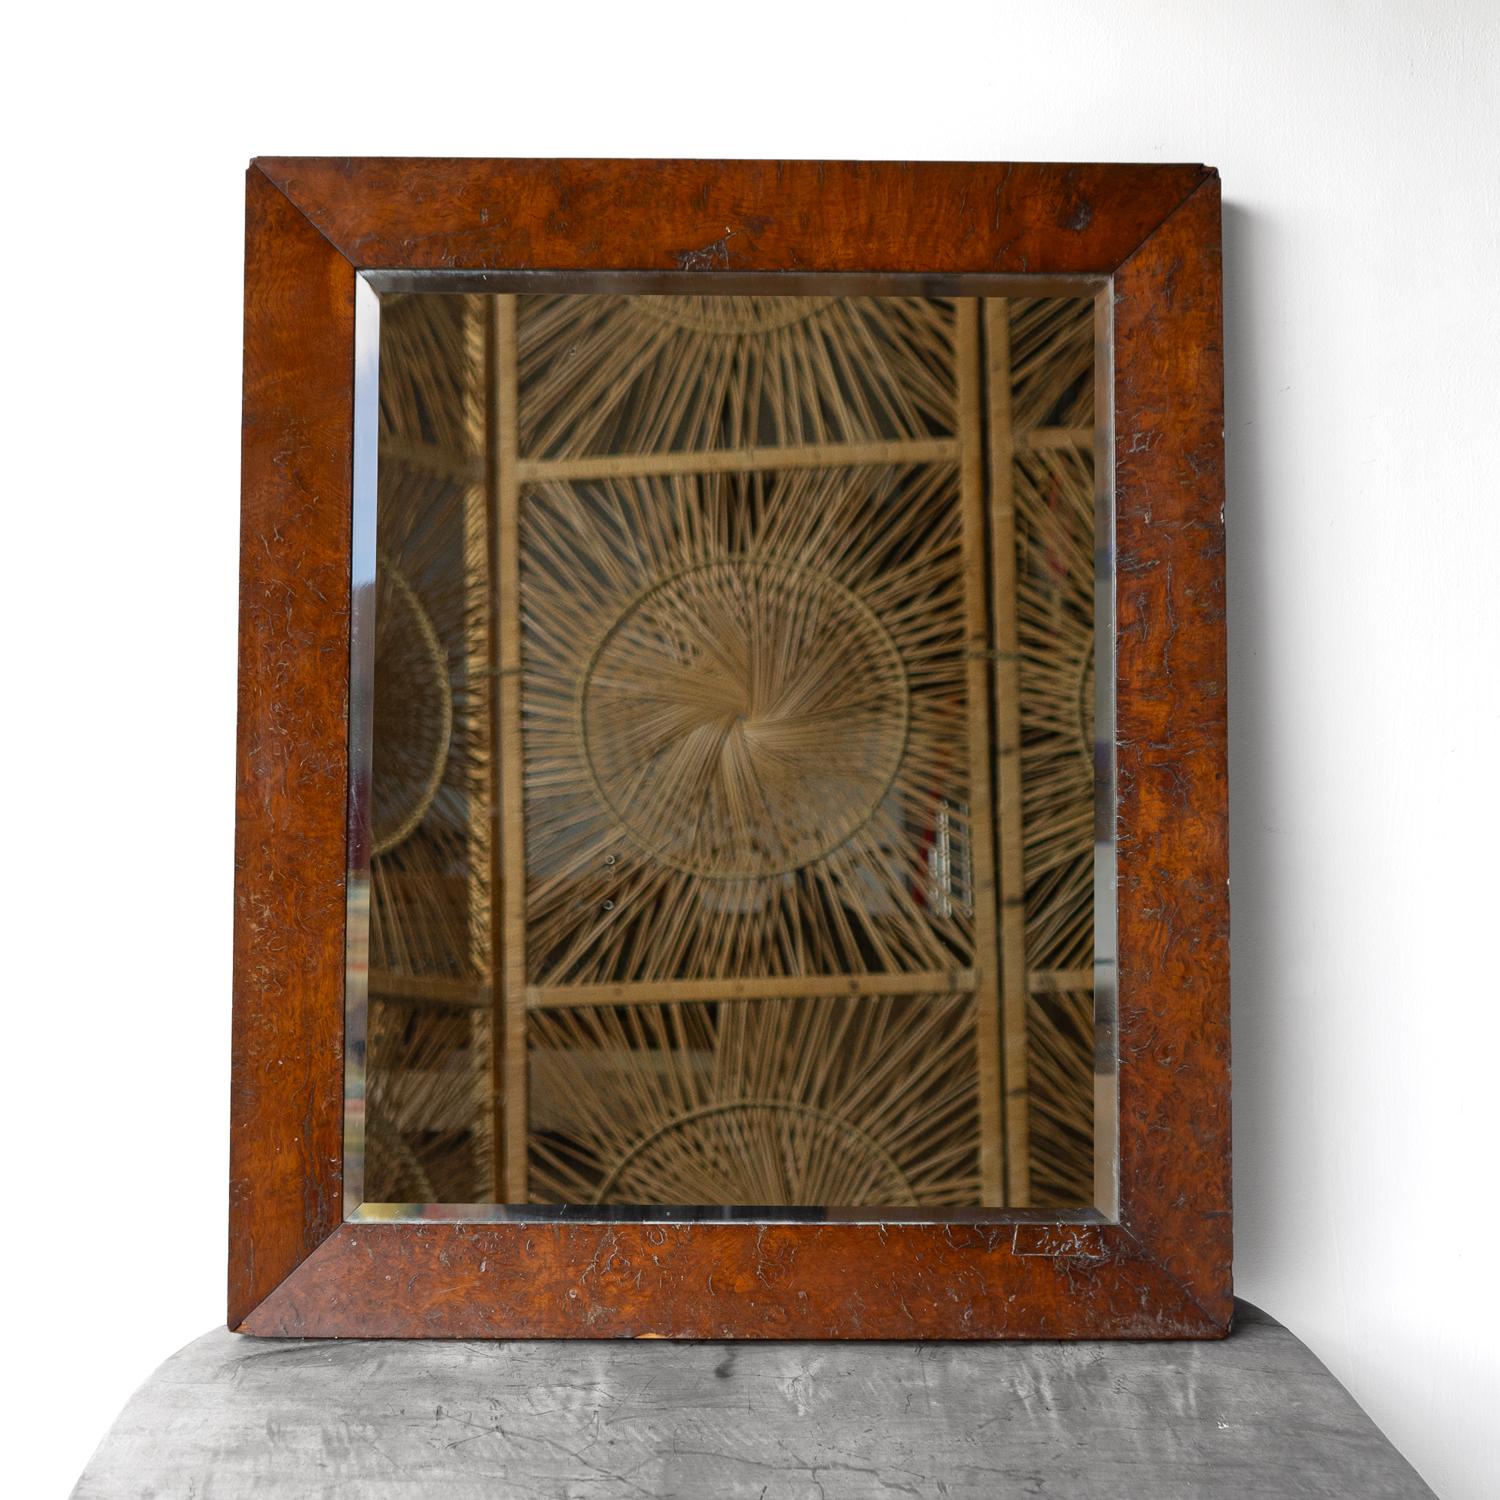 ANTIQUE MIRROR, 1800er Jahre

Ein einfacher und hübscher Rahmen aus gekappter Eiche.
Original Spiegelplatte mit abgeschrägter Kante.
Er kann entweder als Tischspiegel mit seiner Staffelei verwendet oder an die Wand gehängt werden.
Es ist in gutem